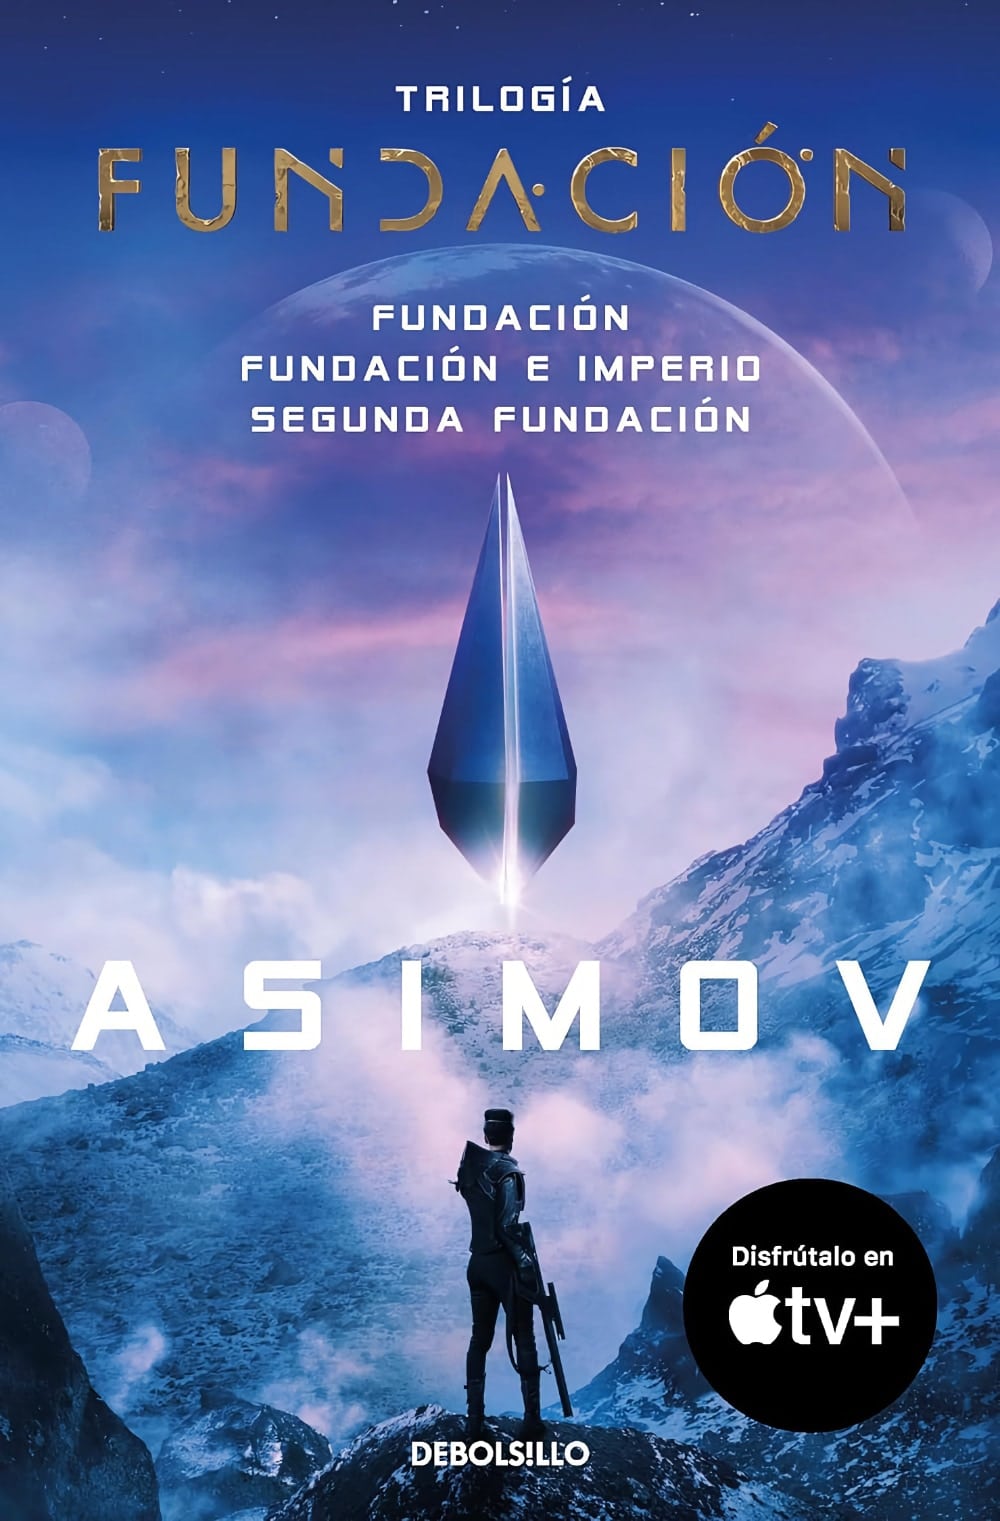 Trilogía de la fundación de Isaac Asimov